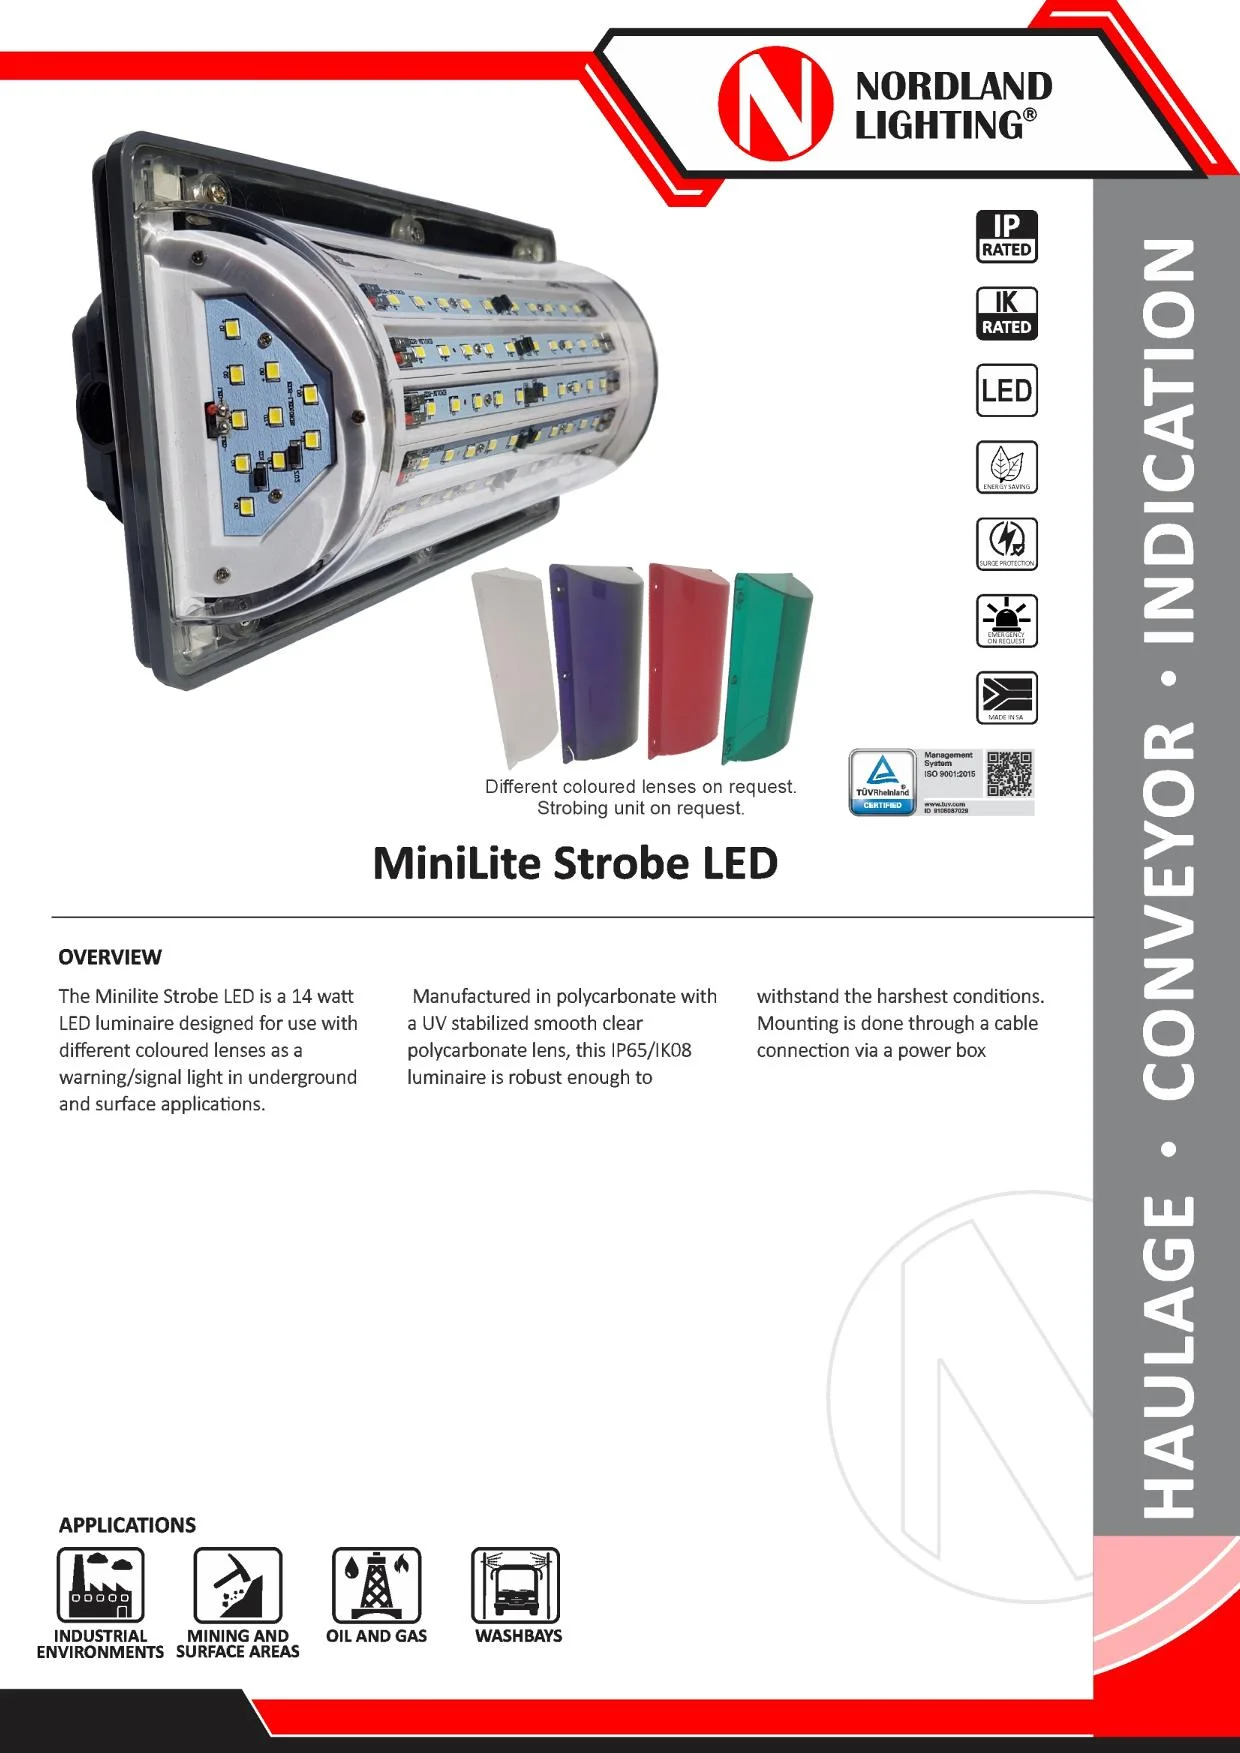 NL3 Nordland Minilite Strobe LED Luminaire